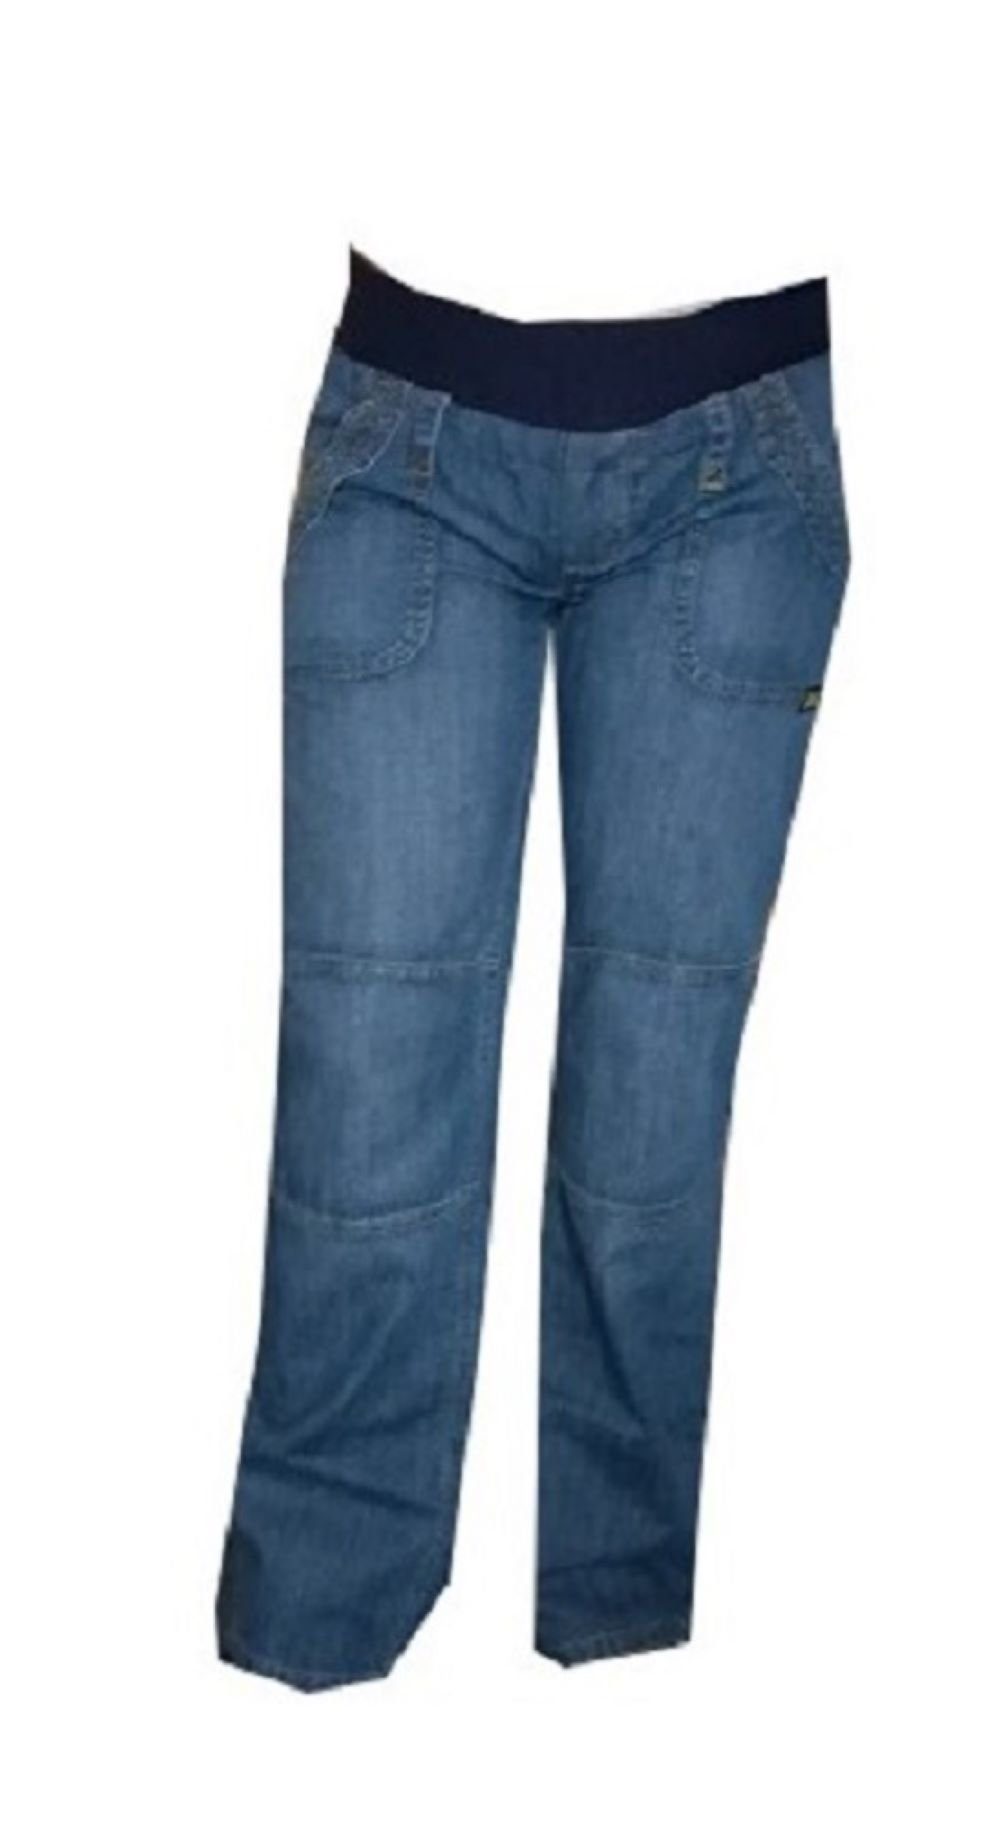 Umstandshose Valja Umstandshose Umstandsjeans blau Jeans Schwangerschaft